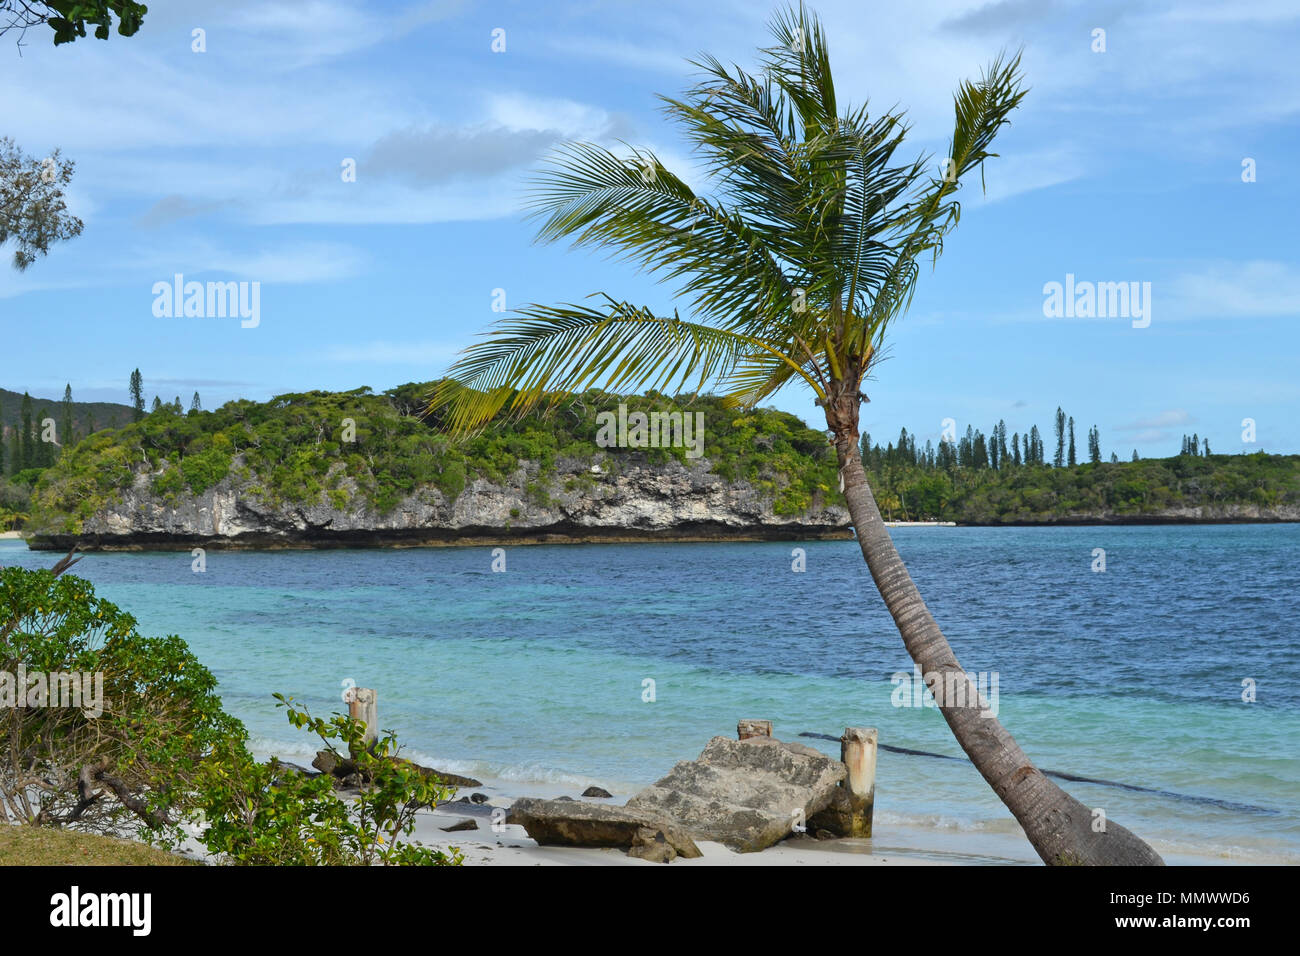 Kanumera Rock at Kanumera Bay, Isle of Pines, New Caledonia, South Pacific Stock Photo